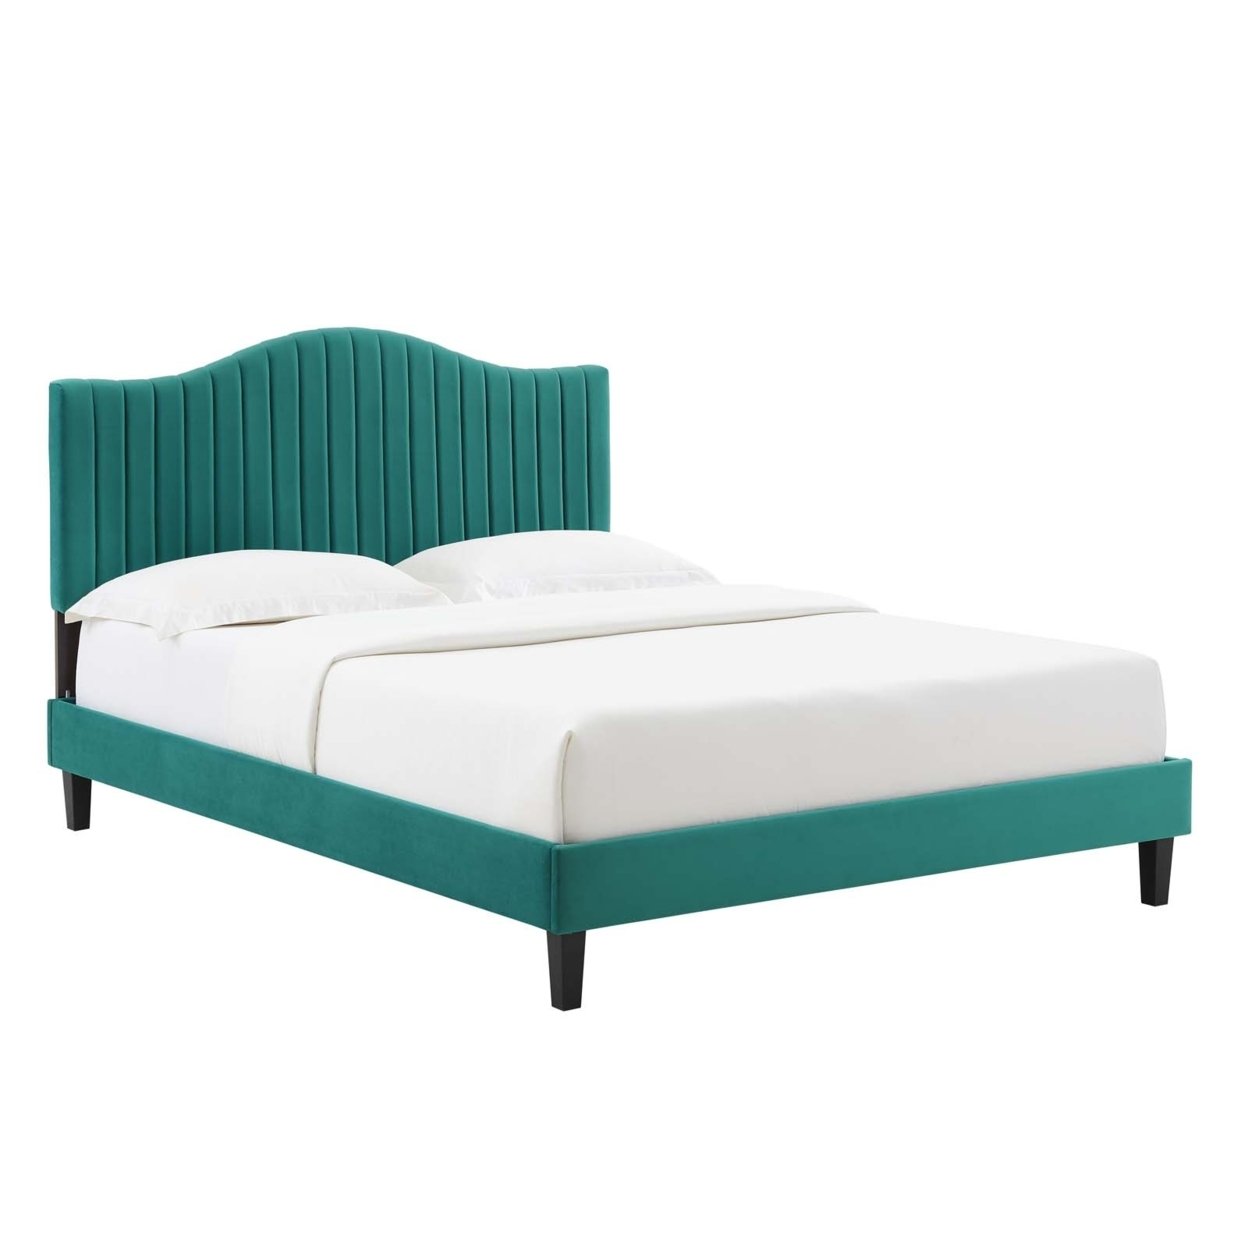 Twin Size Platform Bed, Teal Green Velvet, Camelback Design Headboard